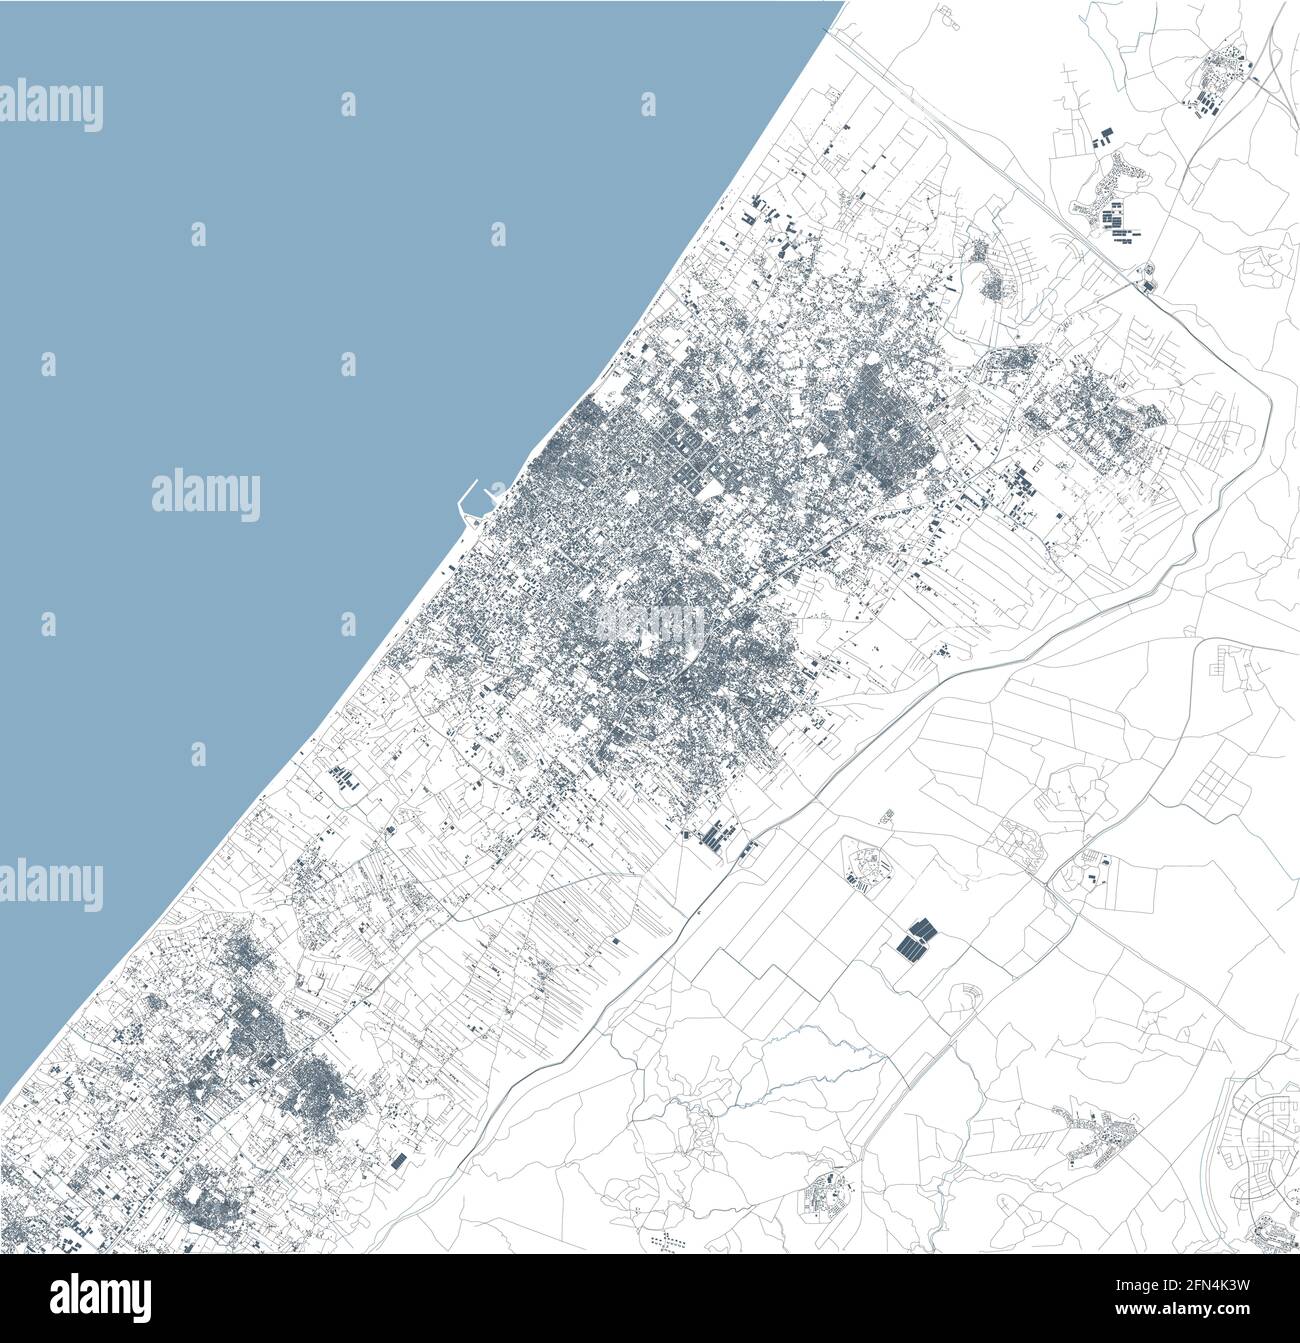 Vista satellitare della striscia di Gaza lato nord. Strade abitazioni e confini dei territori palestinesi con Israele. Mappa politica. Città di Gaza. Vettore Illustrazione Vettoriale